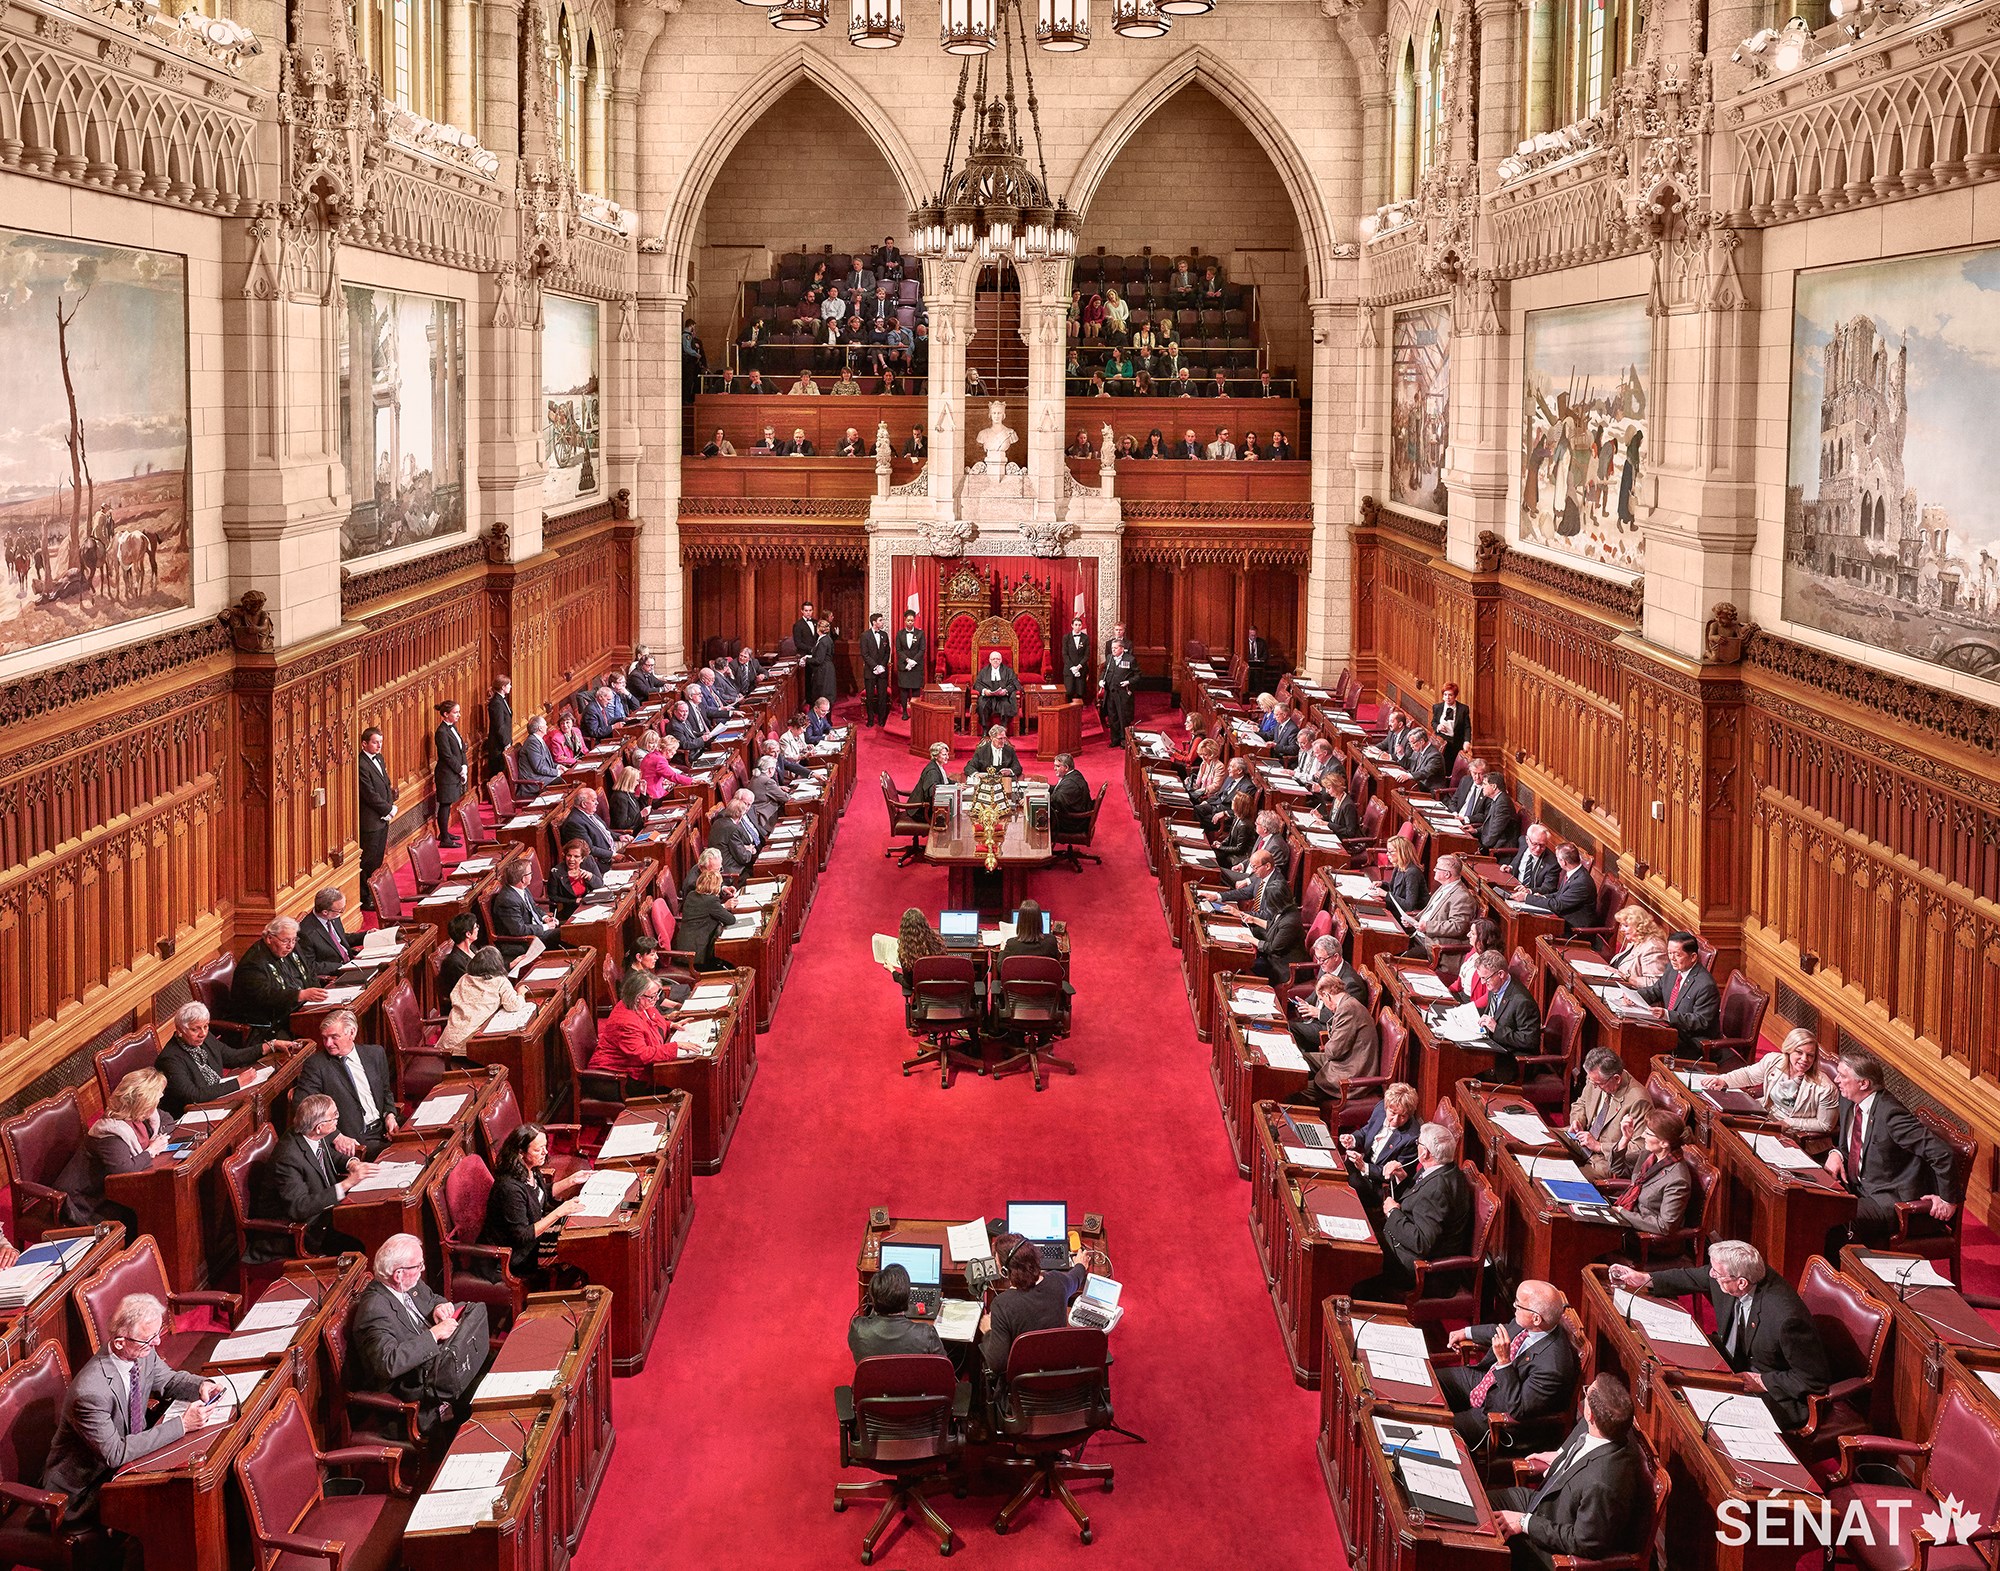 Toutes les paroles prononcées par les sénateurs à la Chambre haute sont consignées dans les Débats du Sénat, une publication qui constitue le compte rendu historique des délibérations au Sénat et qui offre aux Canadiens la transparence à laquelle ils s’attendent au sein de leur démocratie.